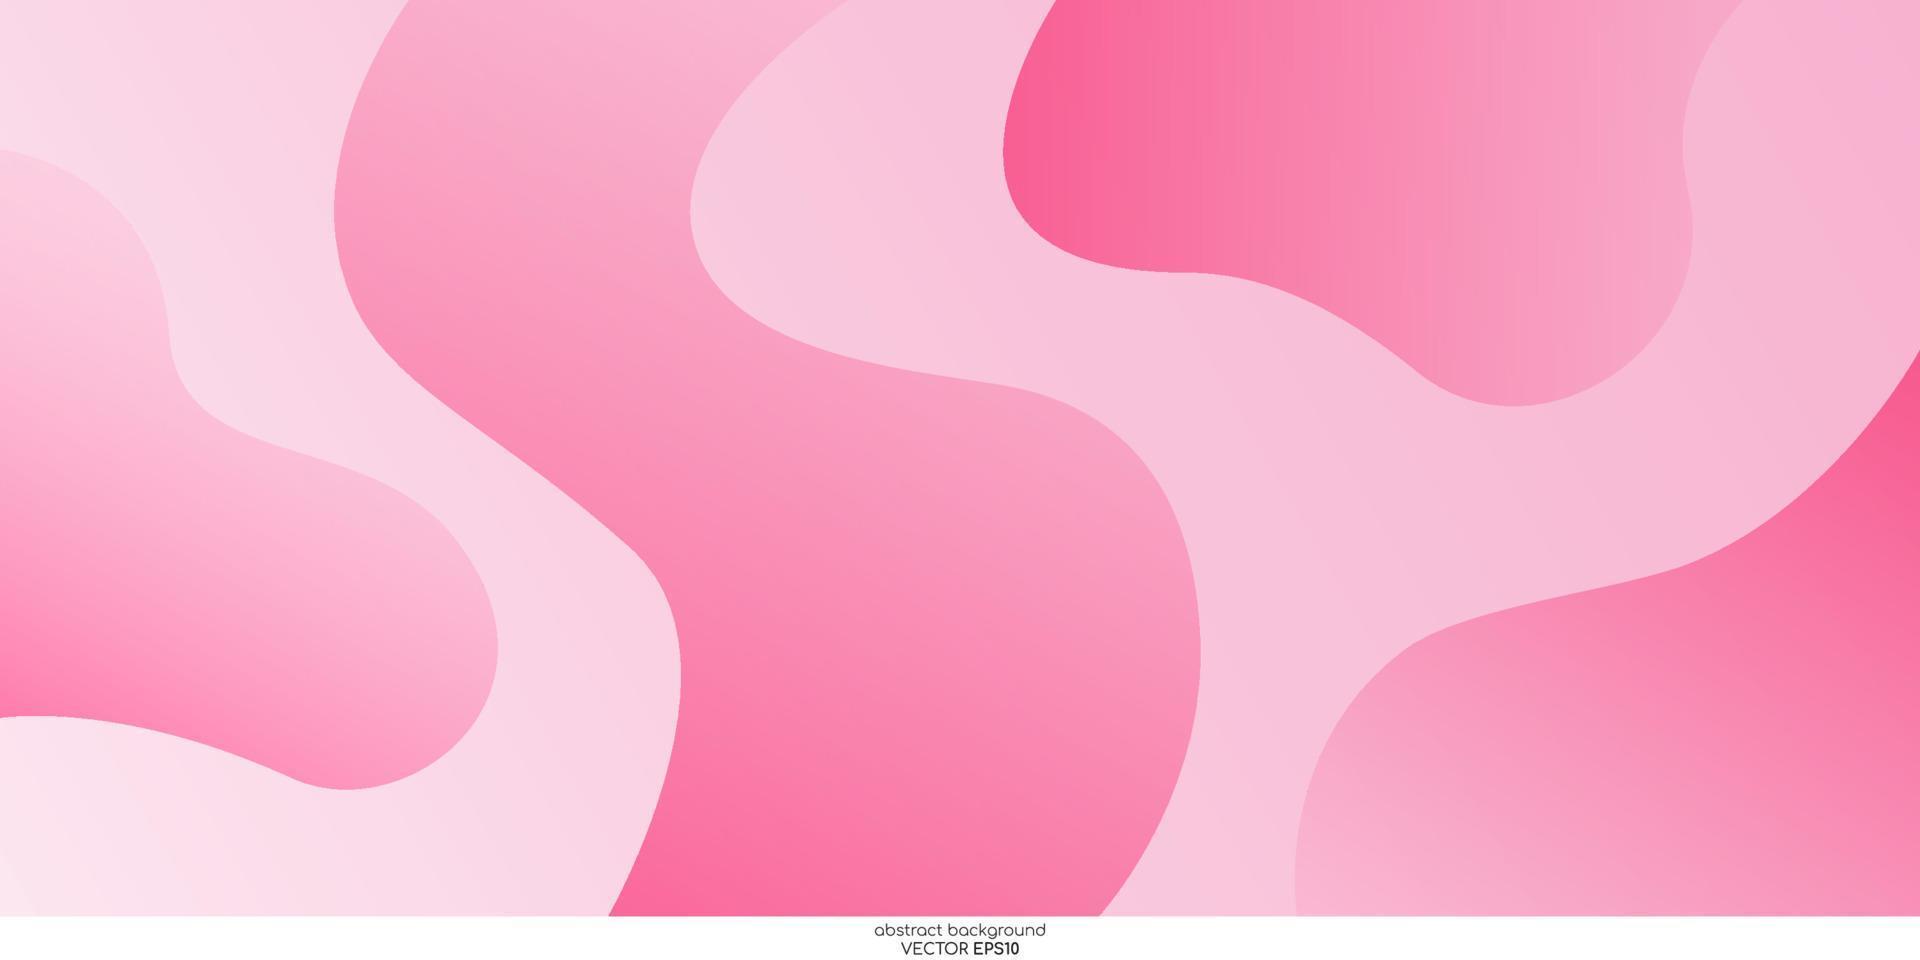 colore rosa pastello astratto con curve di forma concava per lo sfondo. illustrazione vettoriale